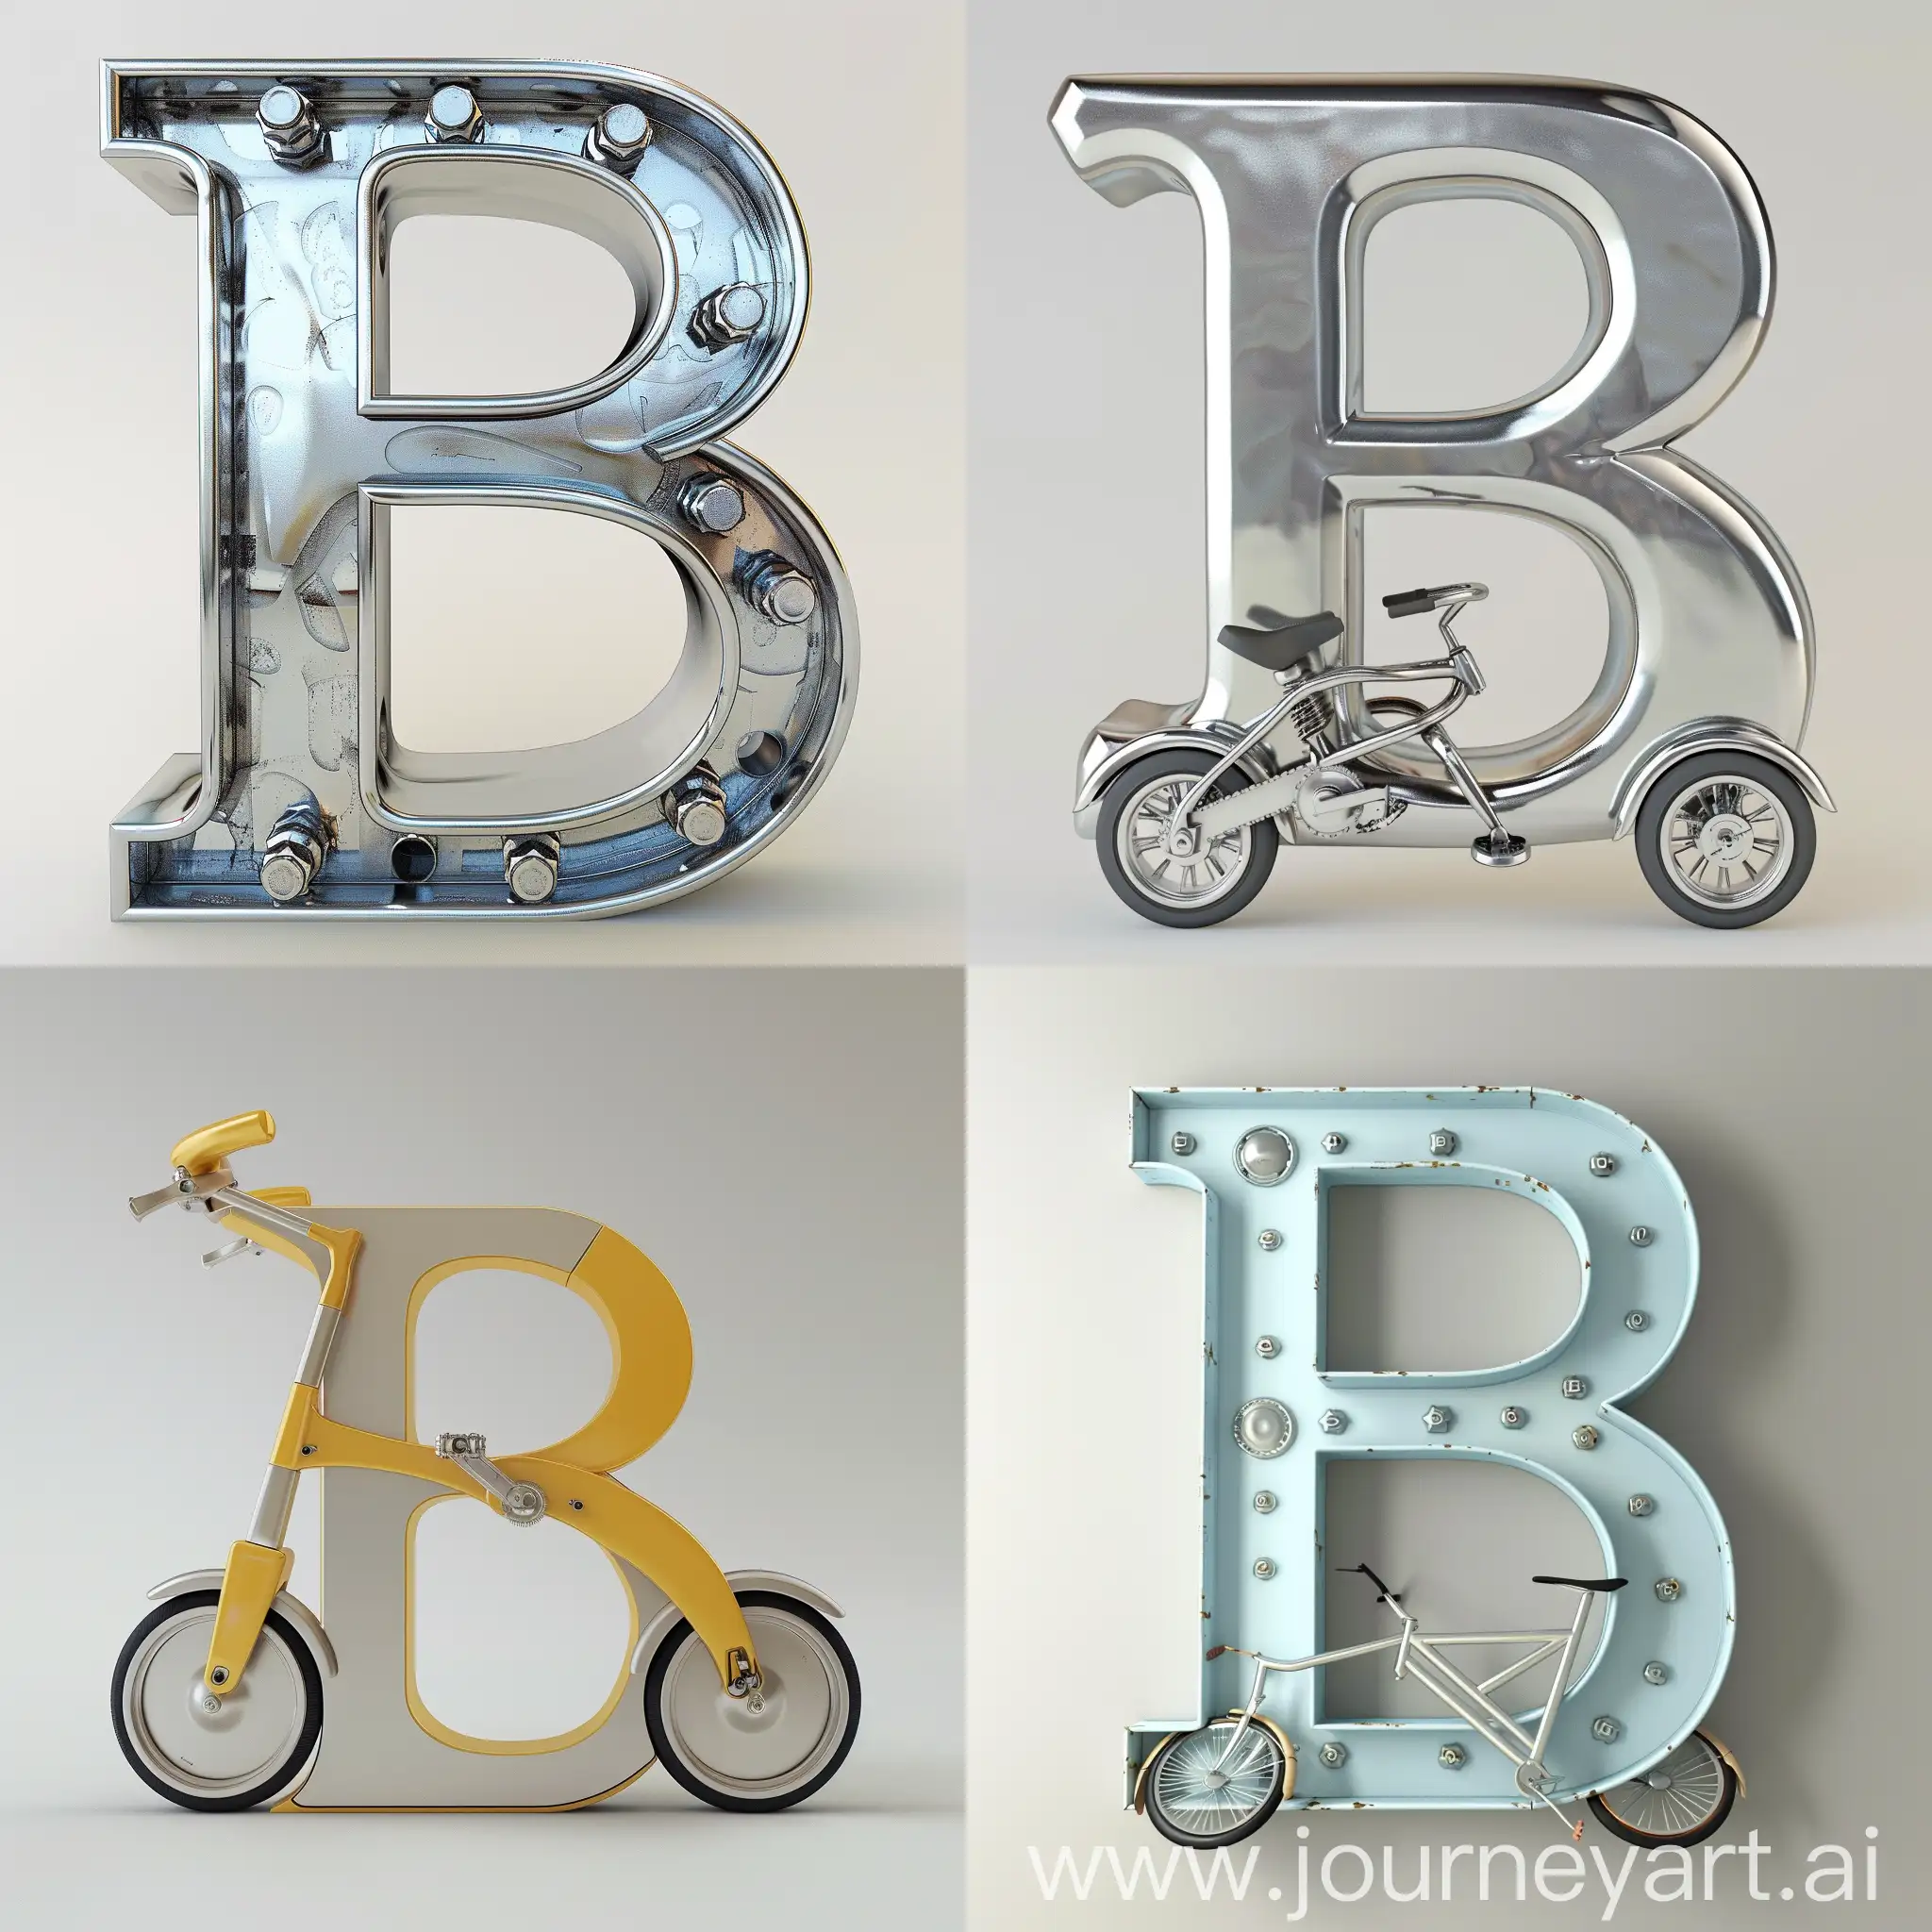 Letter-B-Shaped-Bike-in-Urban-Setting